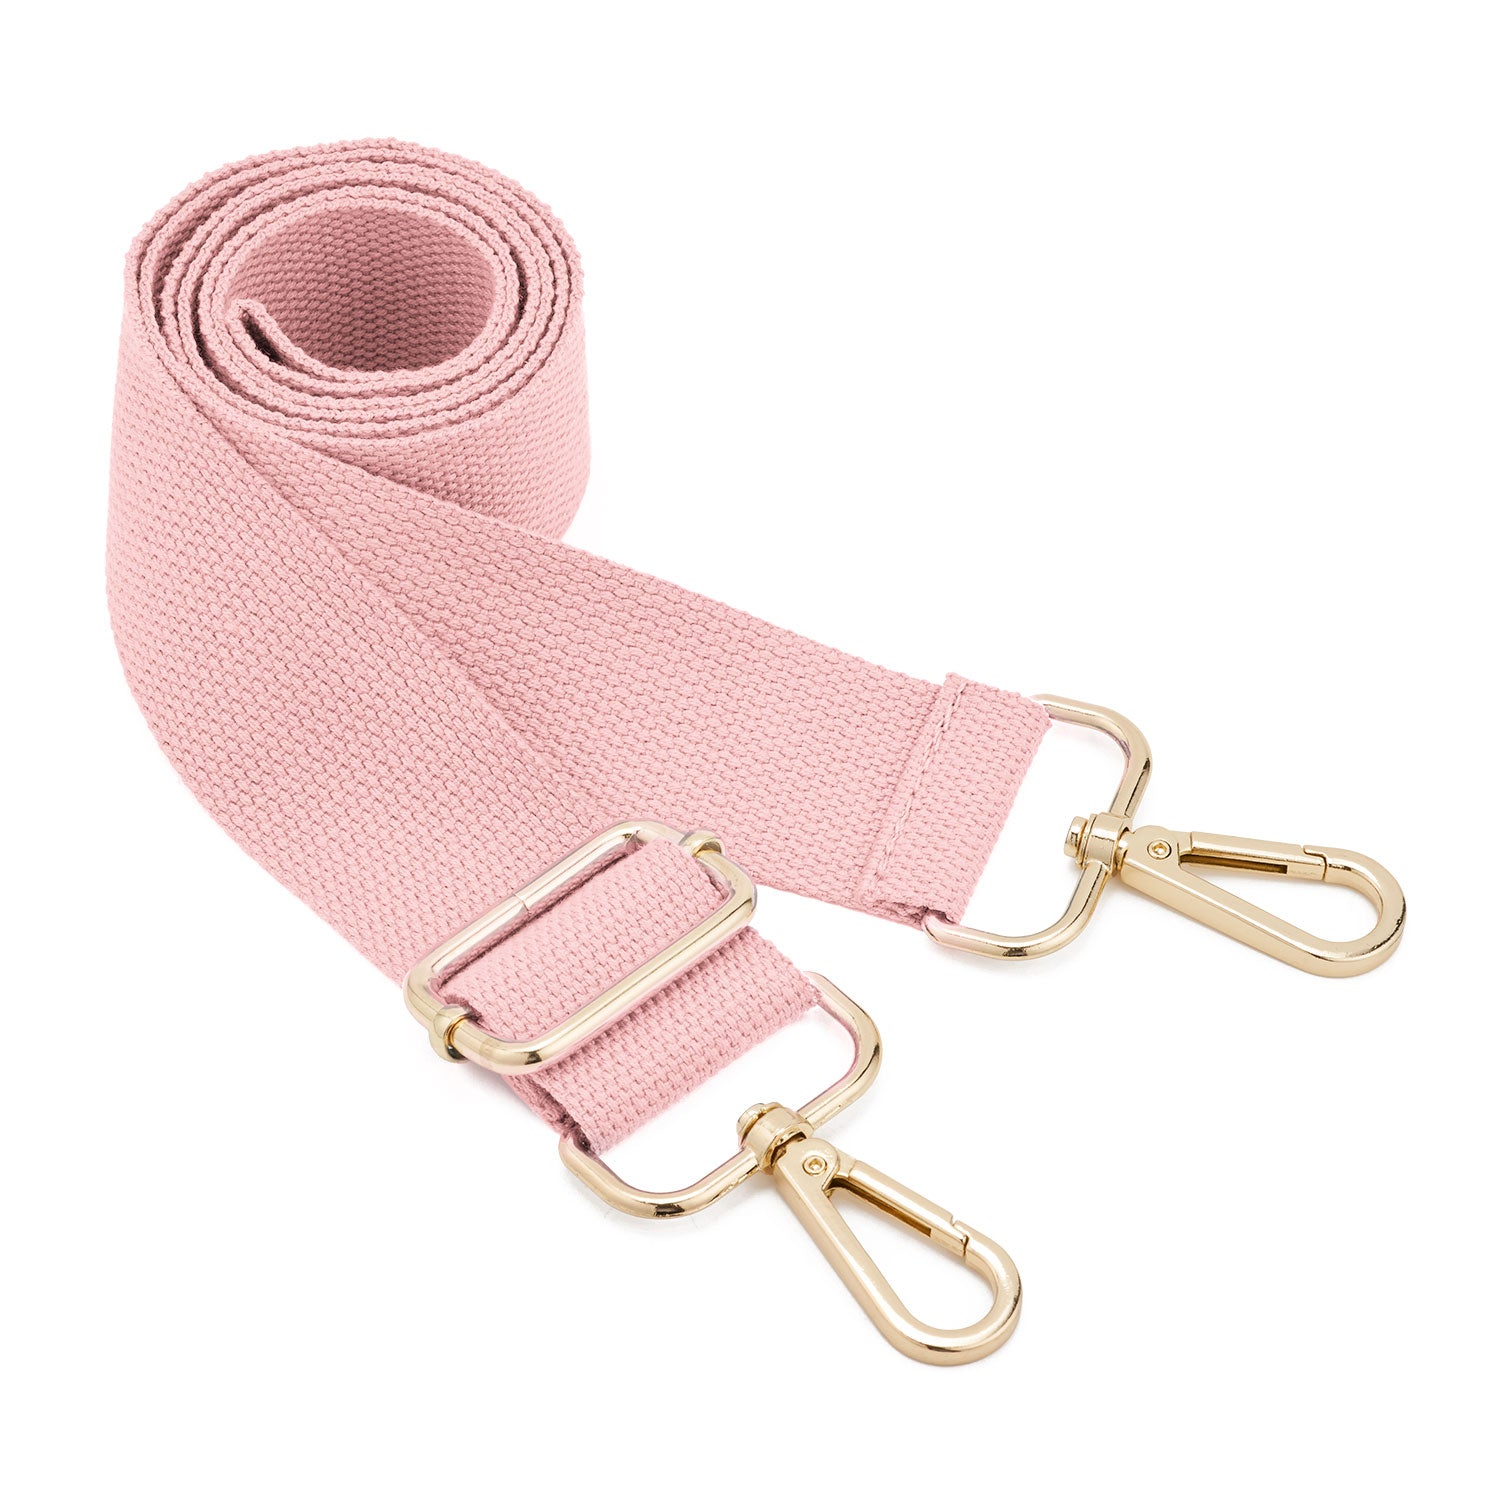 Chain Strap Adjustable Bag Strap Bag Part Accessories for Handbags Leather  Belt Women Bag Shoulder Strap